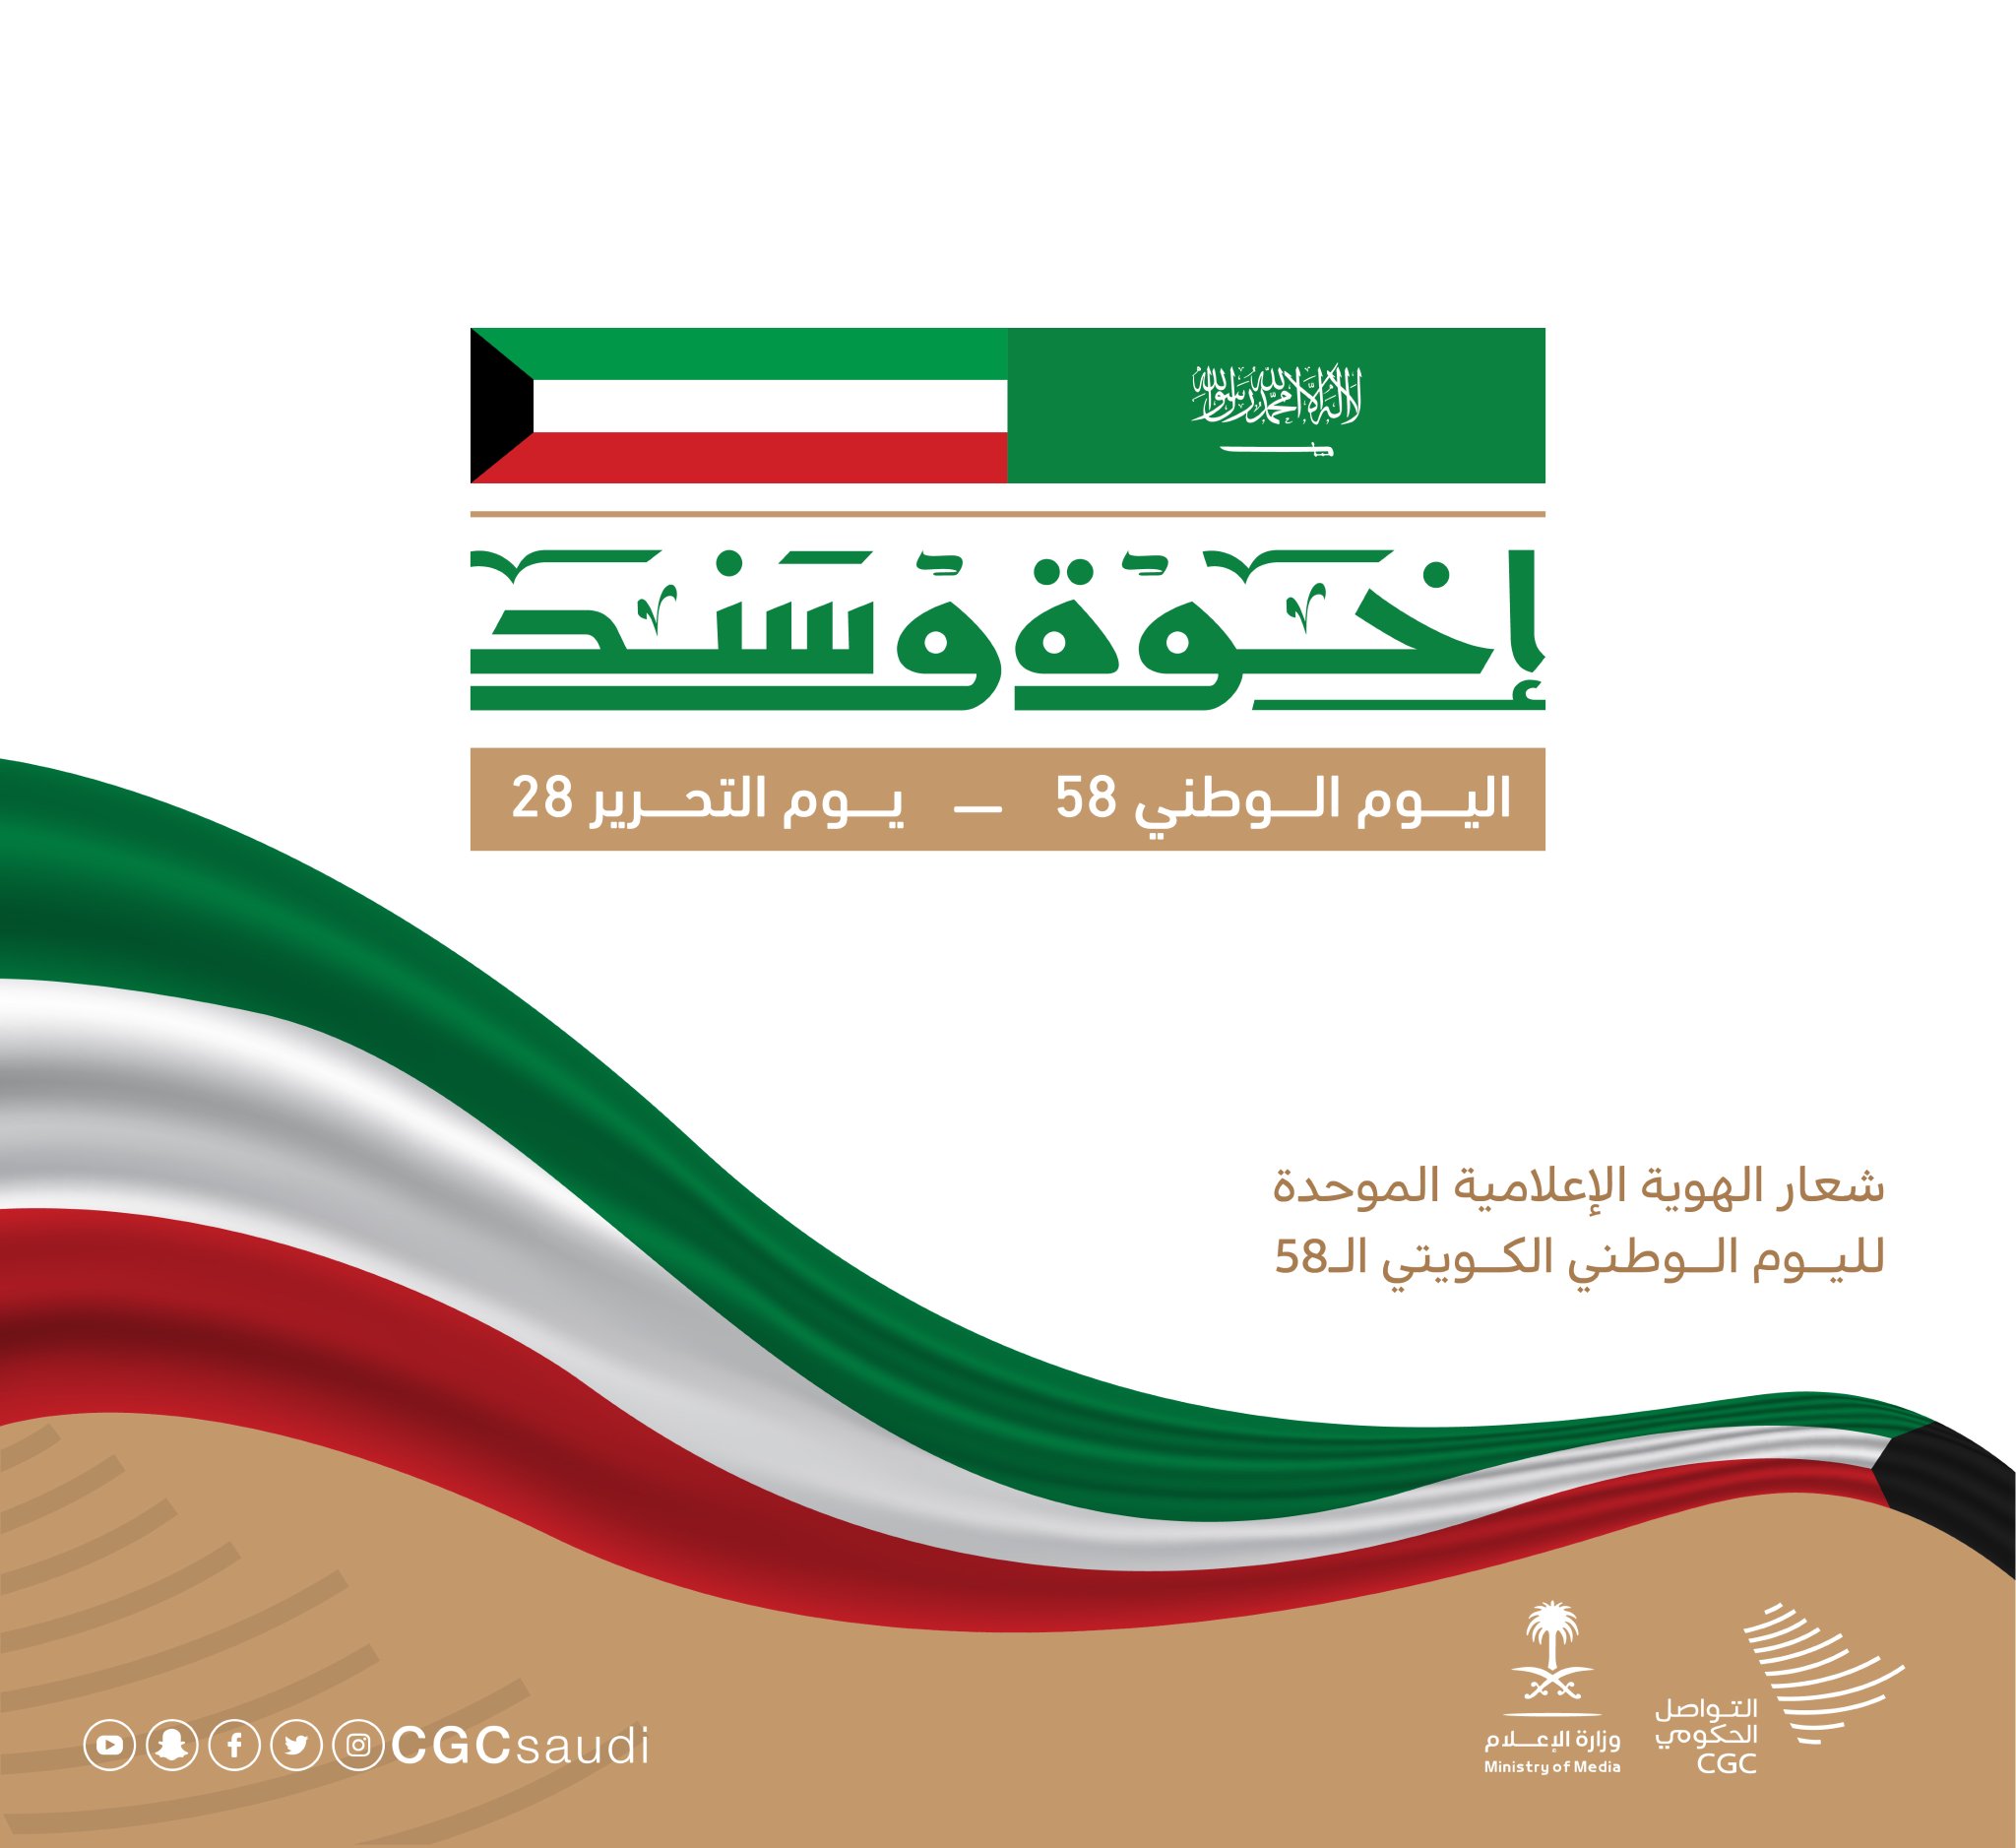 «التواصل الحكومي» يطلق الهوية الإعلامية الموحدة لليوم الوطني الكويتي الـ58